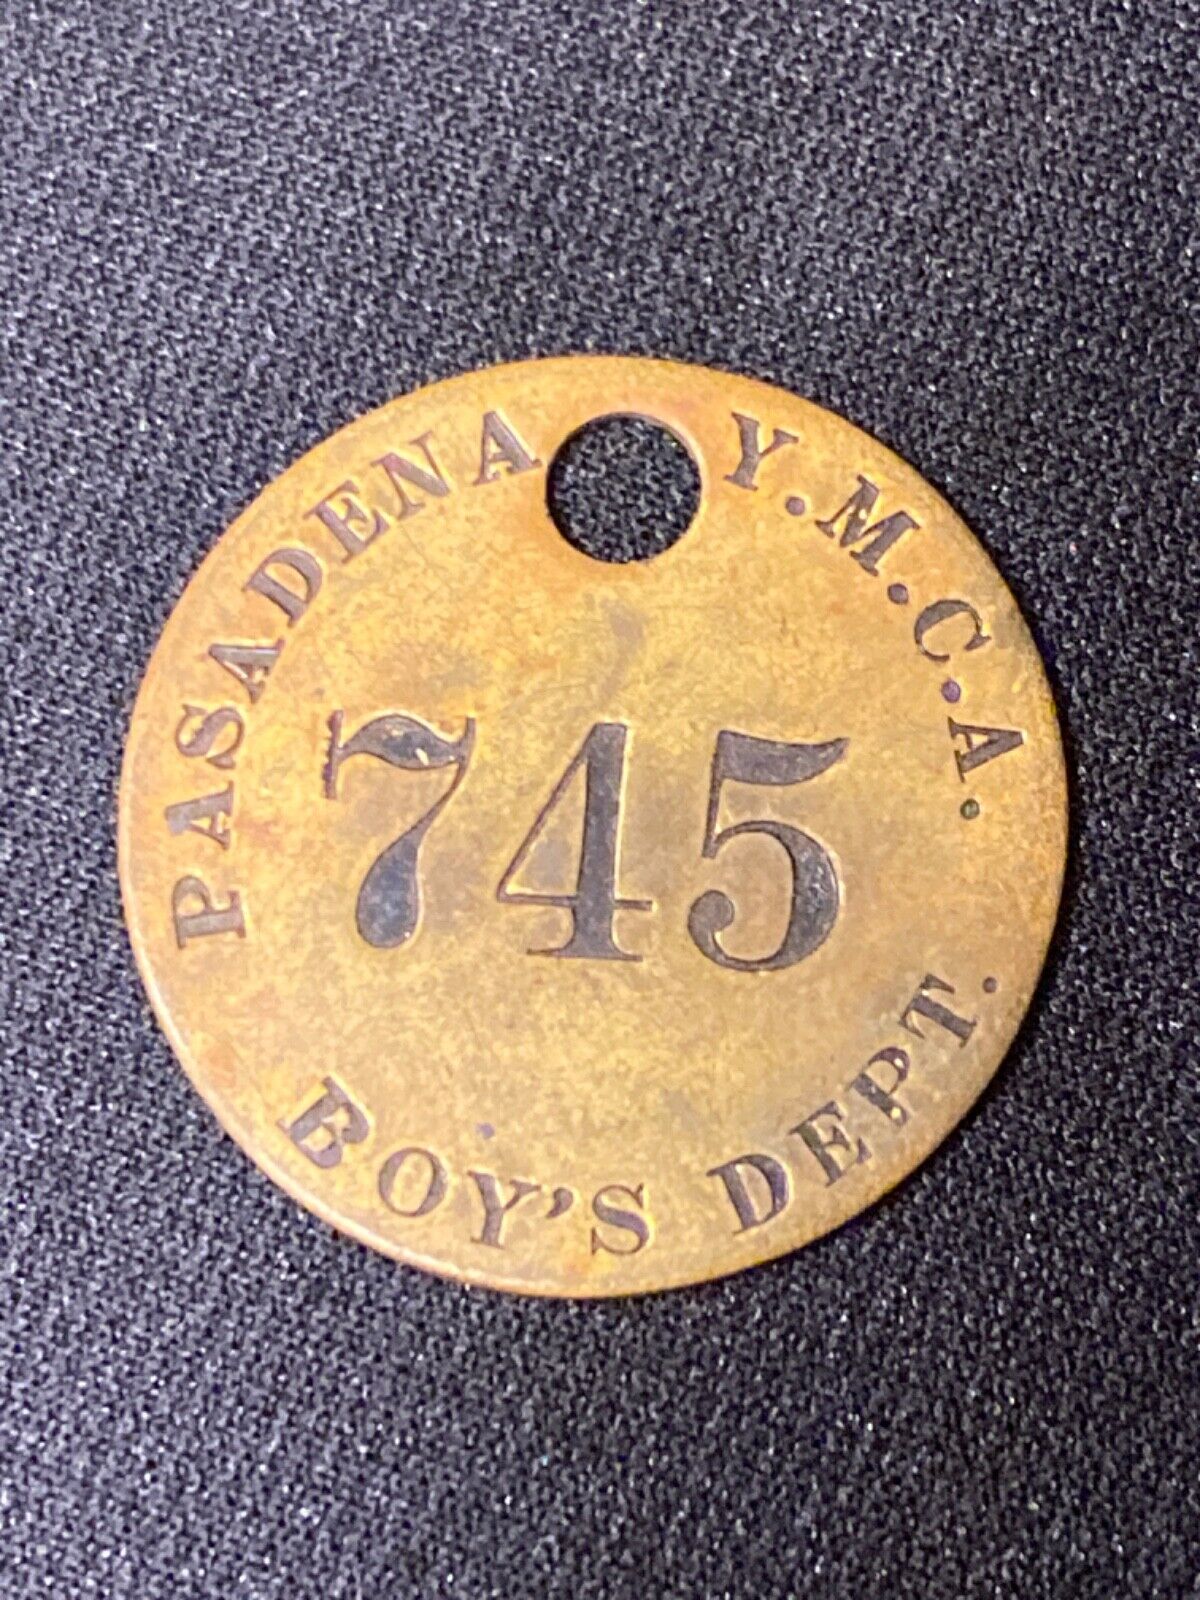 Ca. 1920's Pasadena Y.M.C.A. Boy’s Dept.  745 Solid Brass Room Check Pendant Tag